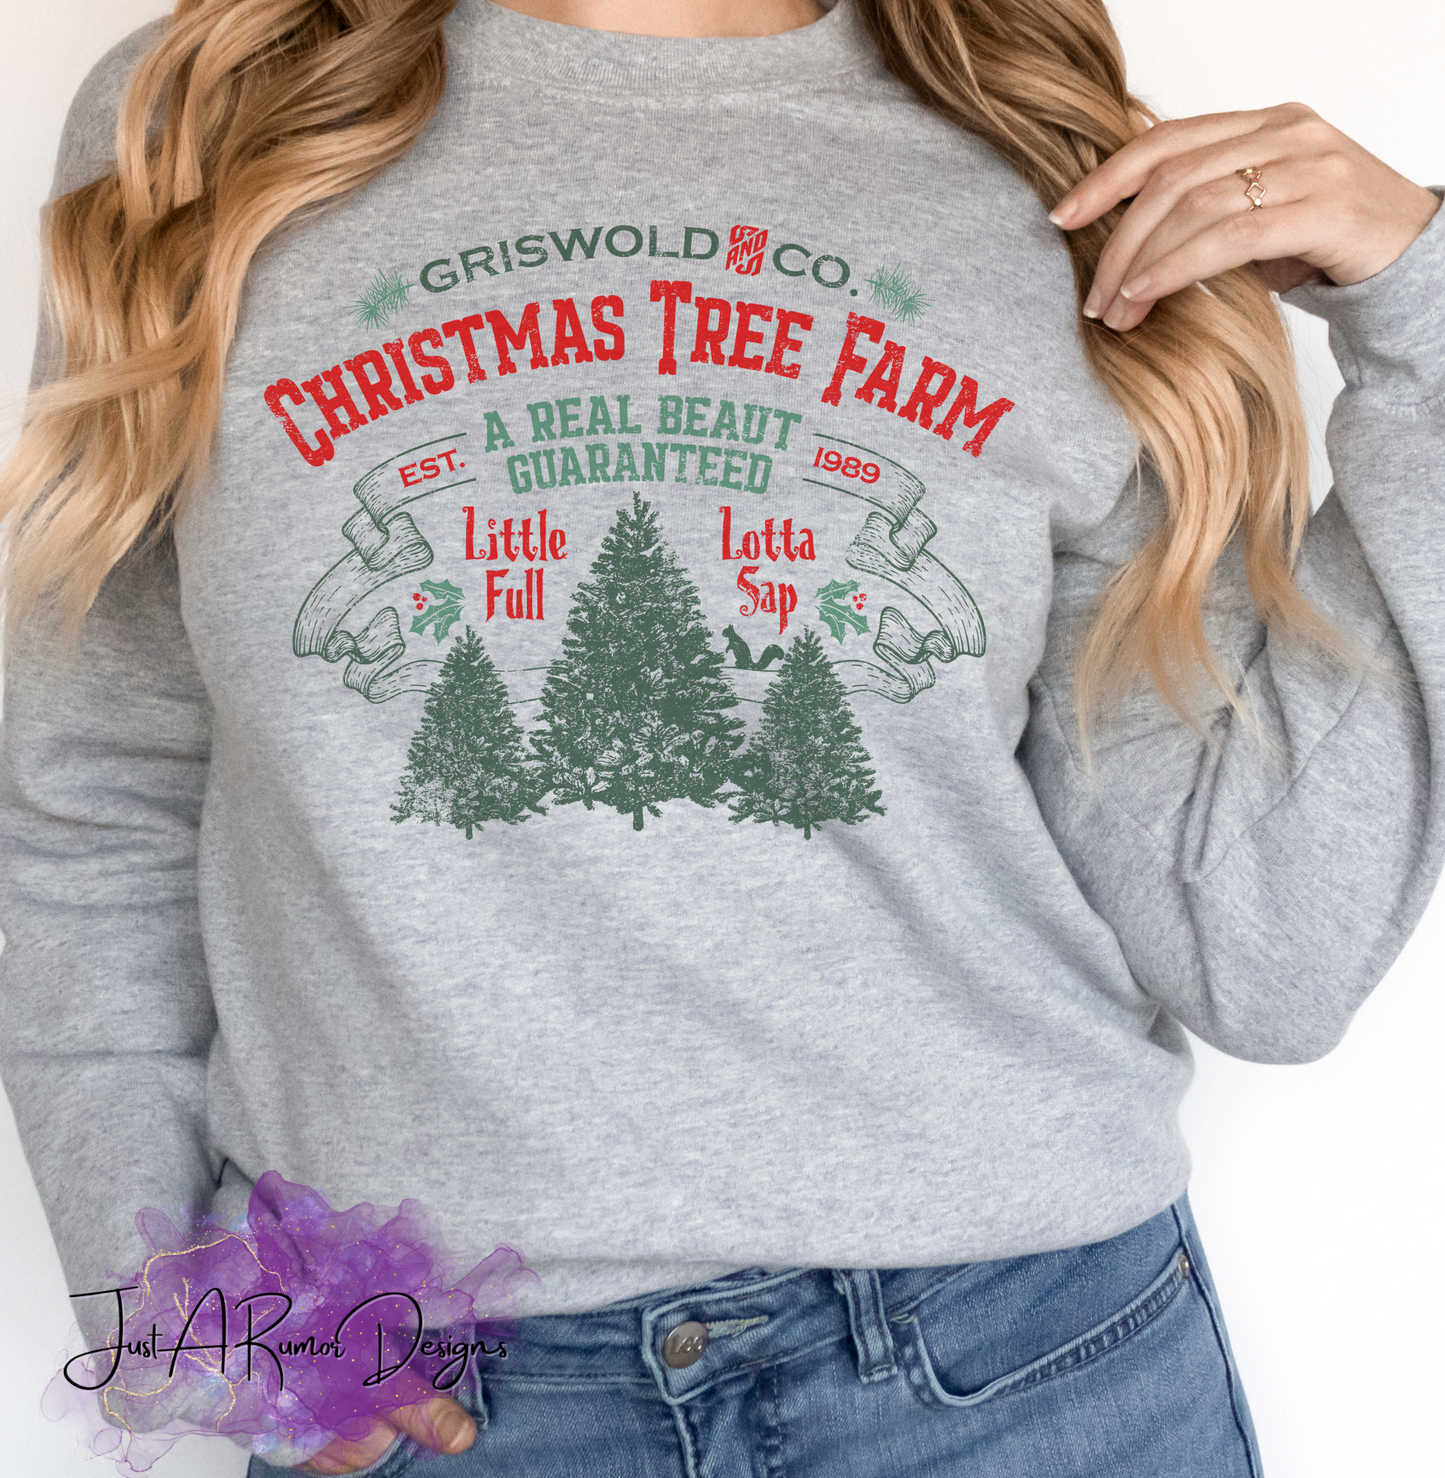 Tree Farm Shirt